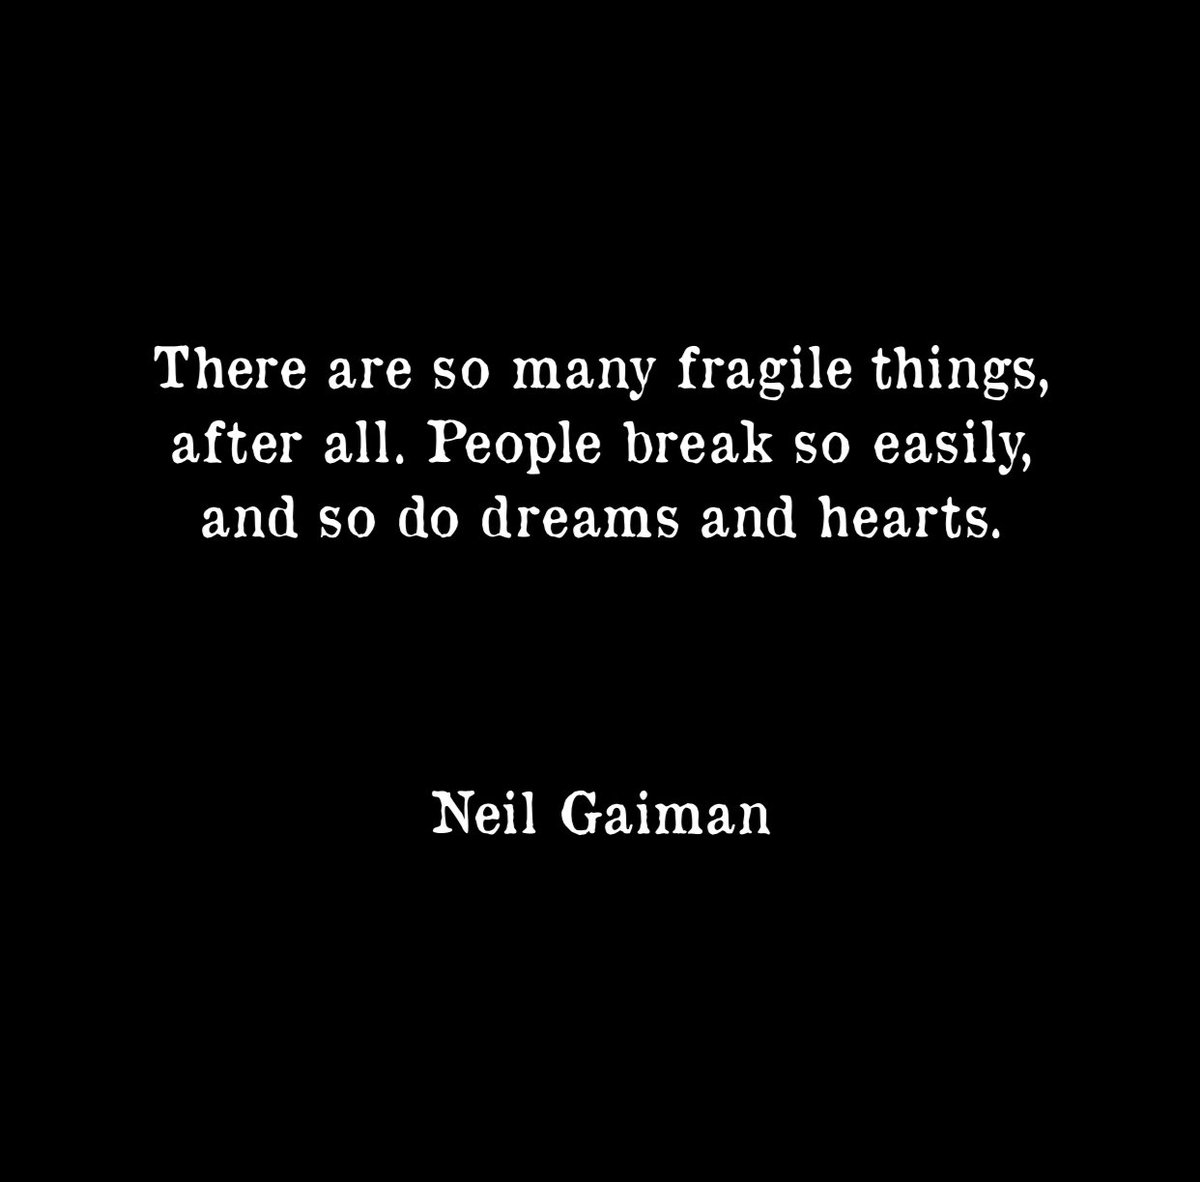 #neilgaiman #quote